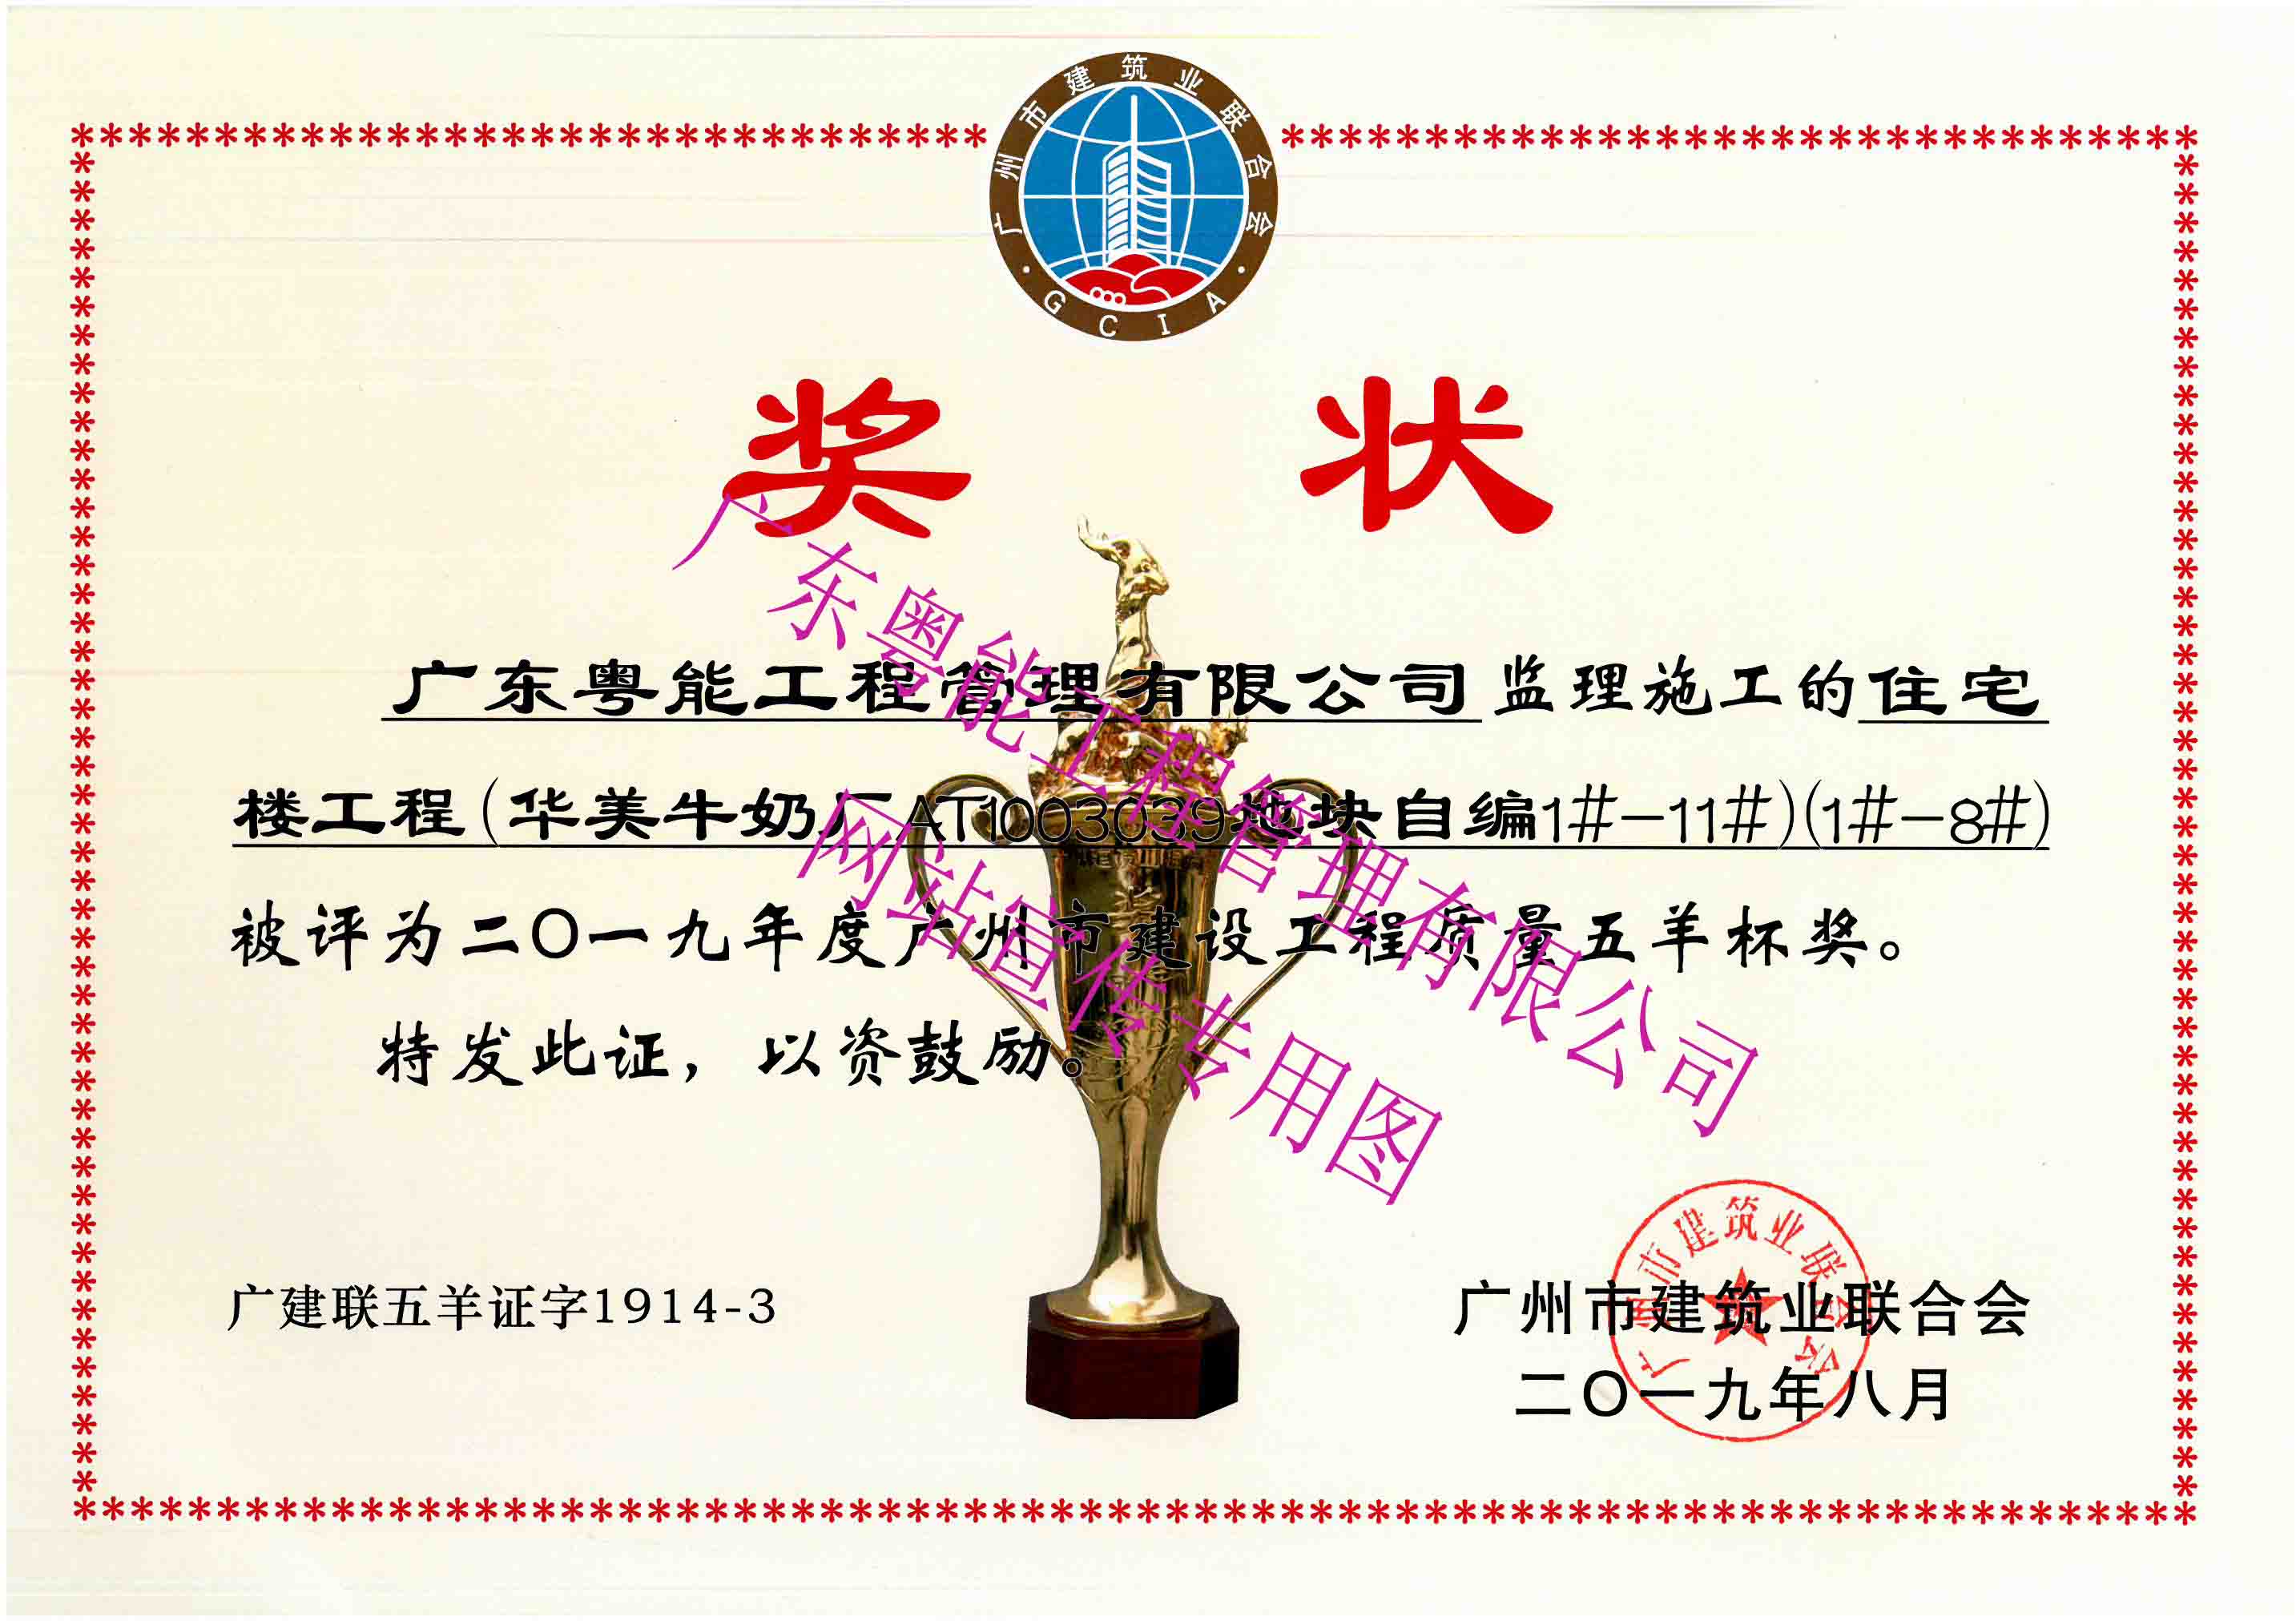 2019年度广州市建设工程质量五羊杯奖